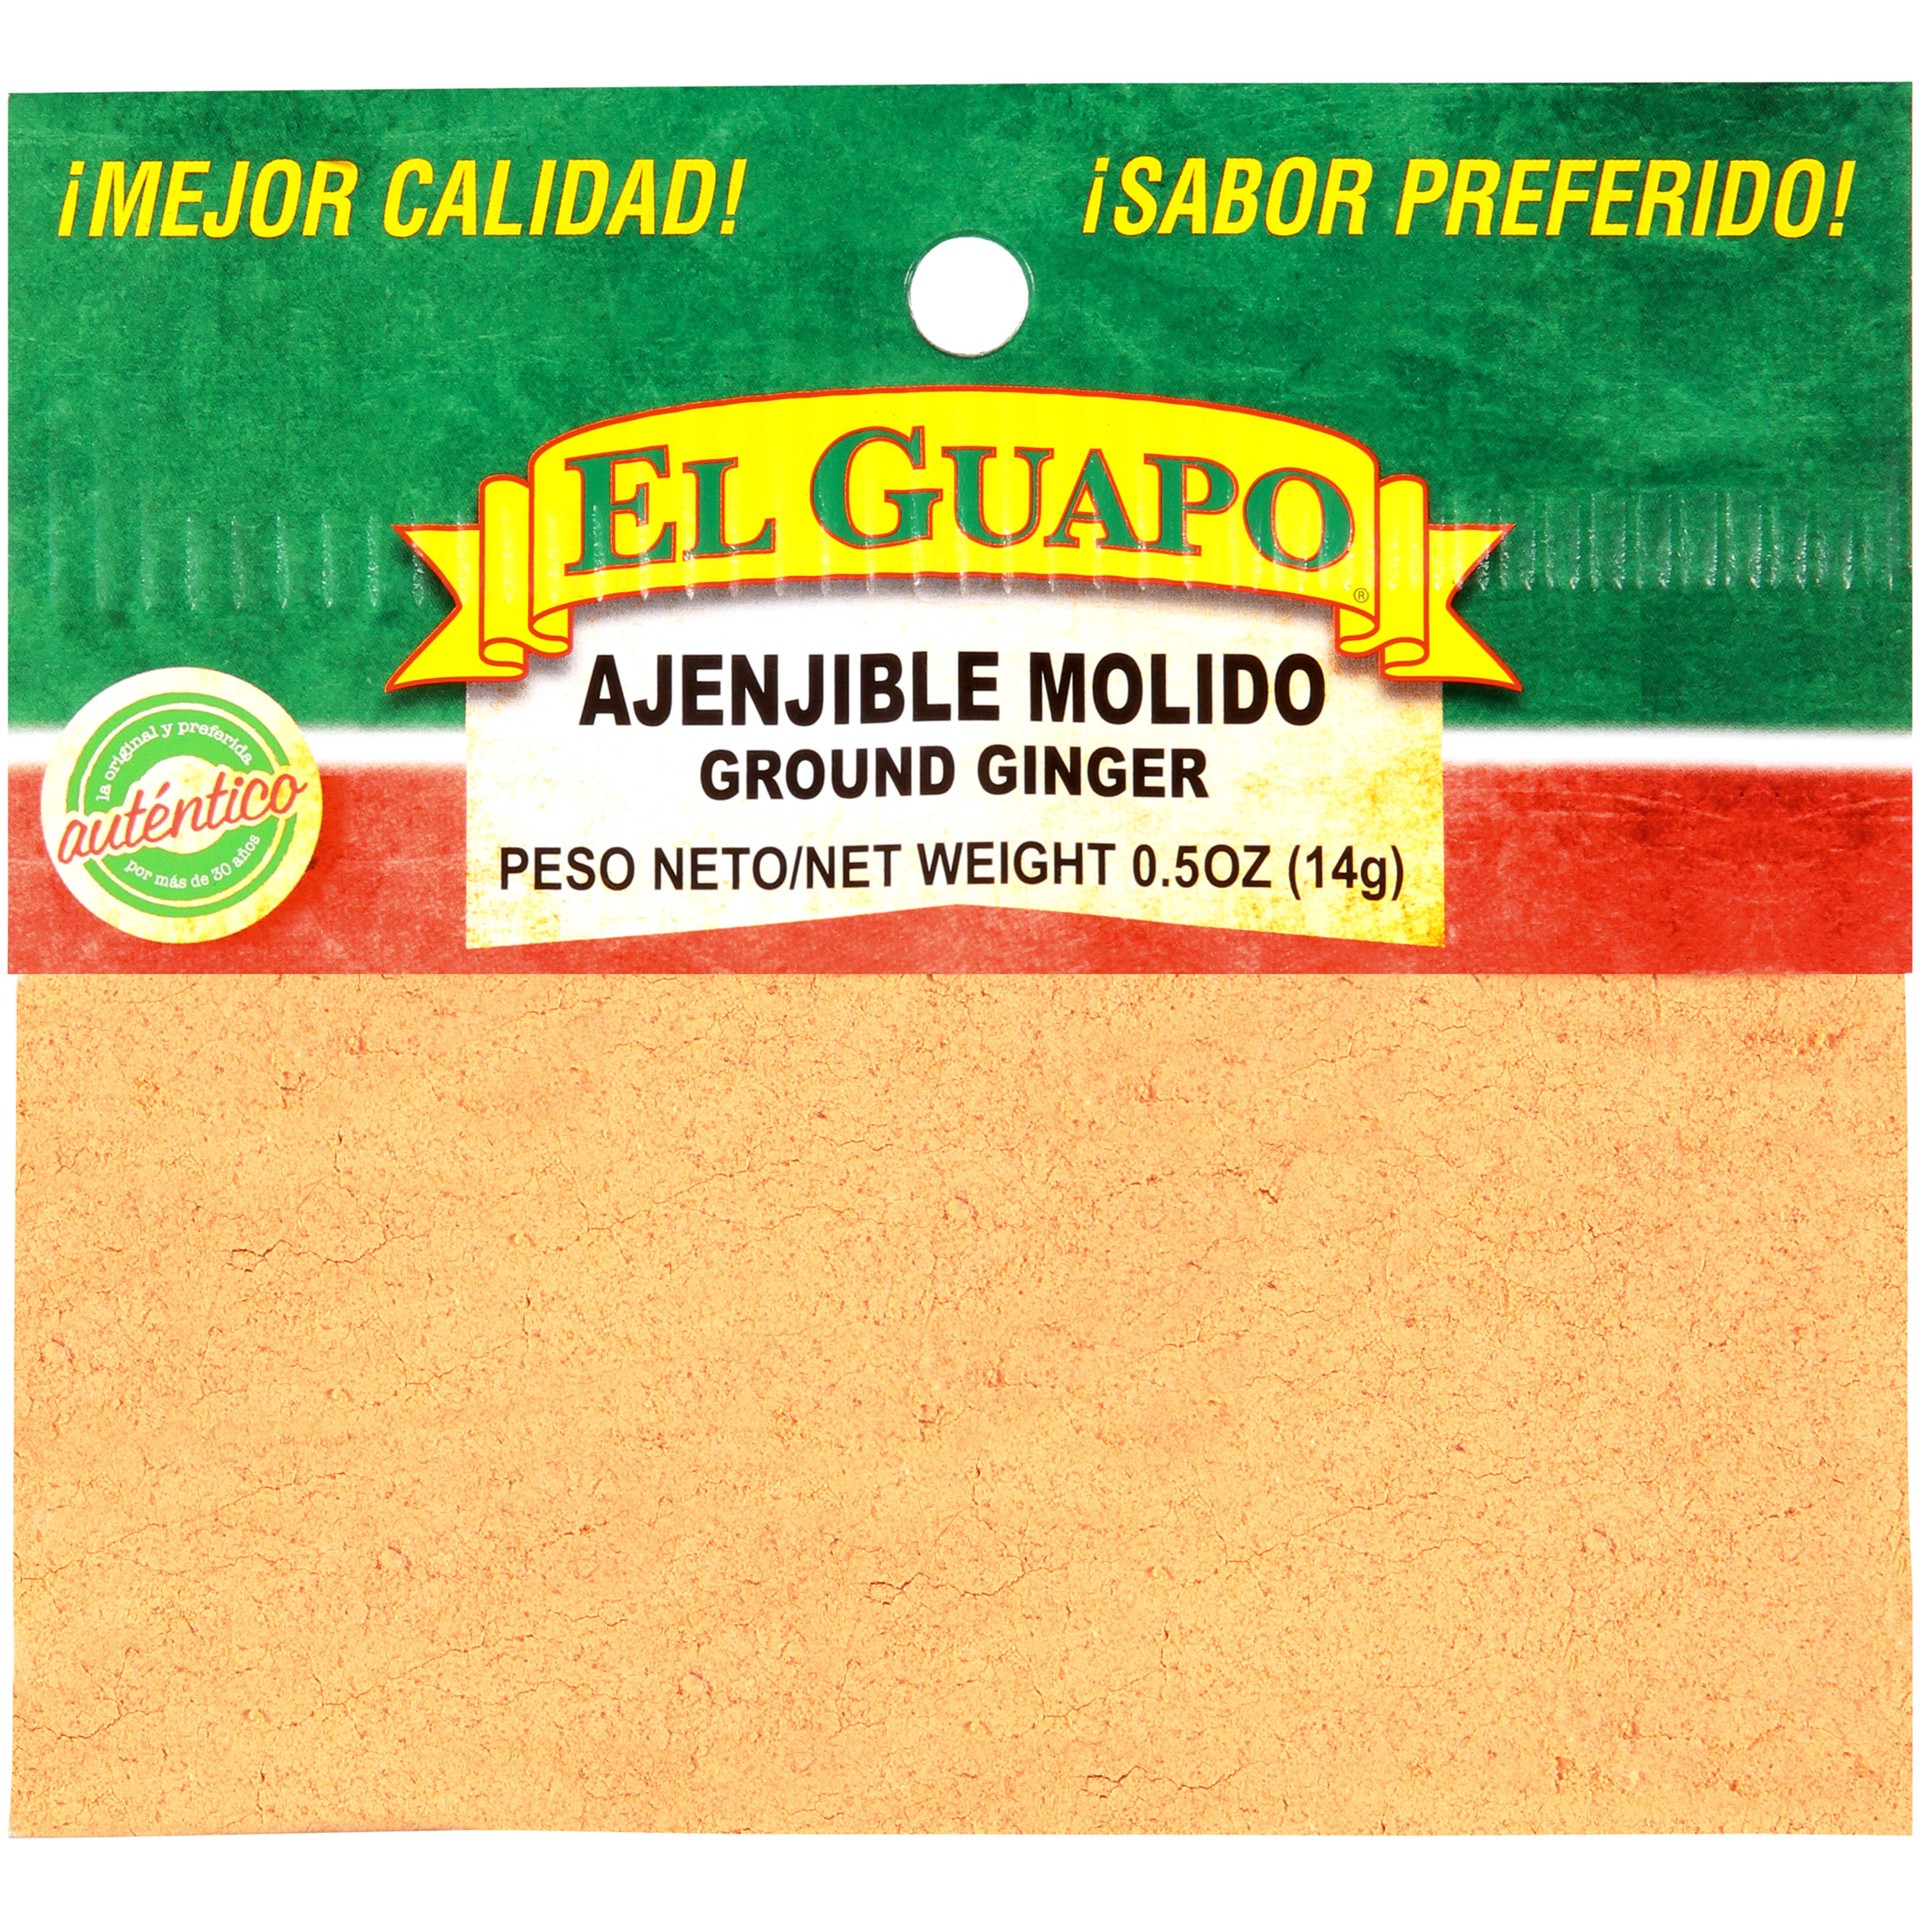 slide 1 of 1, El Guapo Ground Ginger (Ajenjible Molida, 0.5 oz